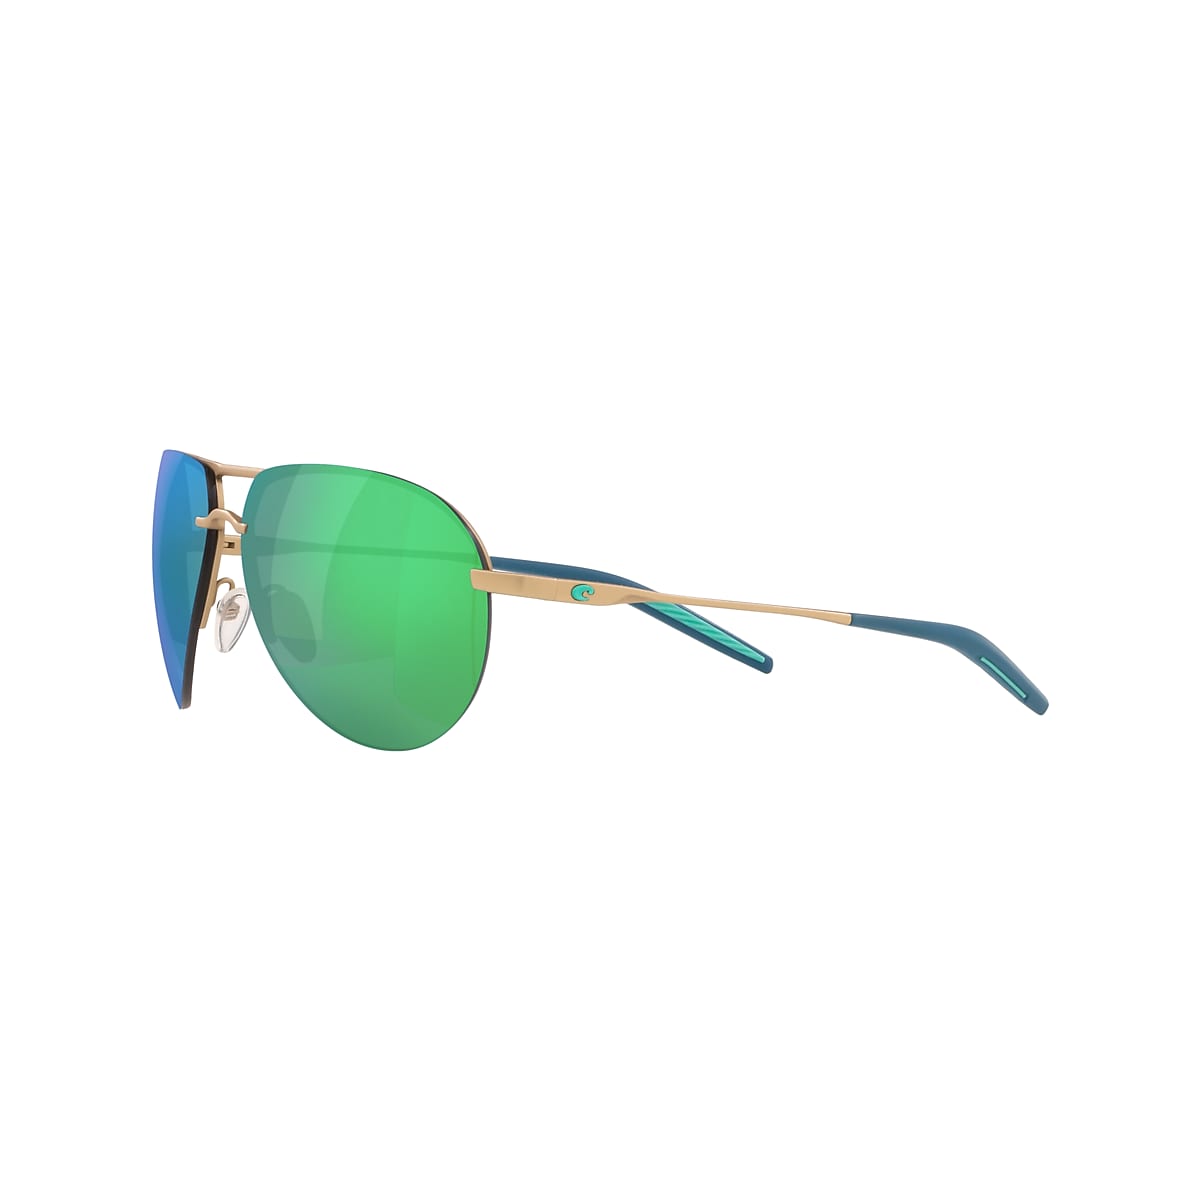 Helo Polarized Sunglasses in Green Mar® Mirror Del Costa 